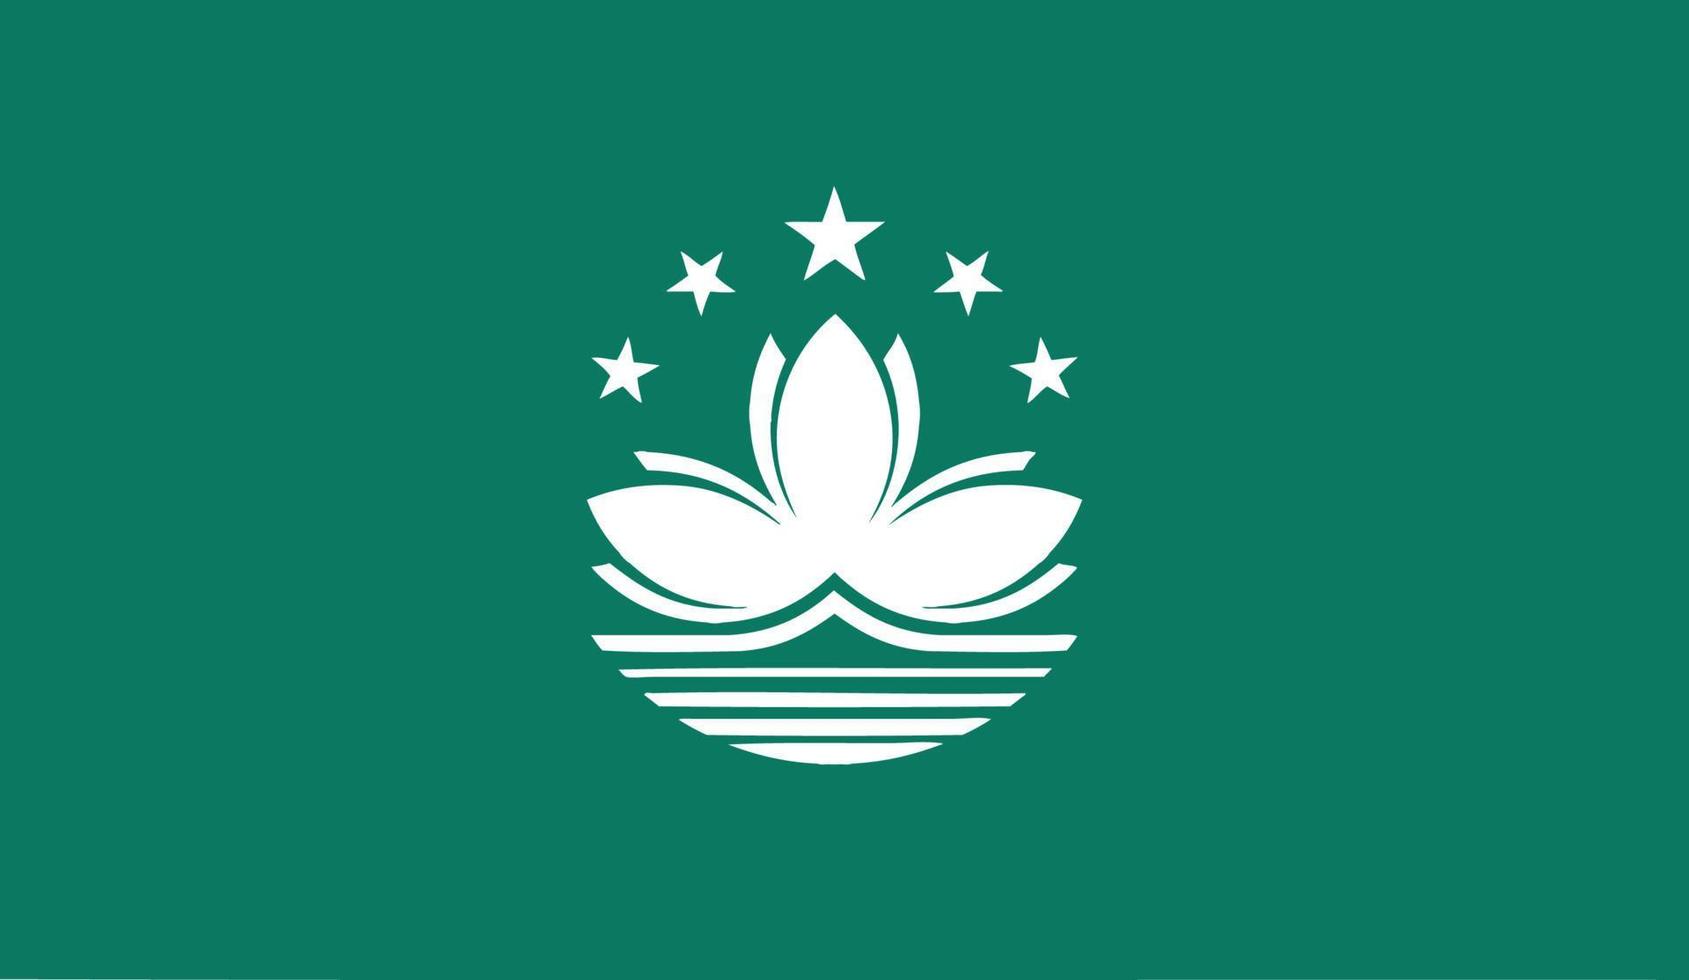 vector illustration of Macau flag.